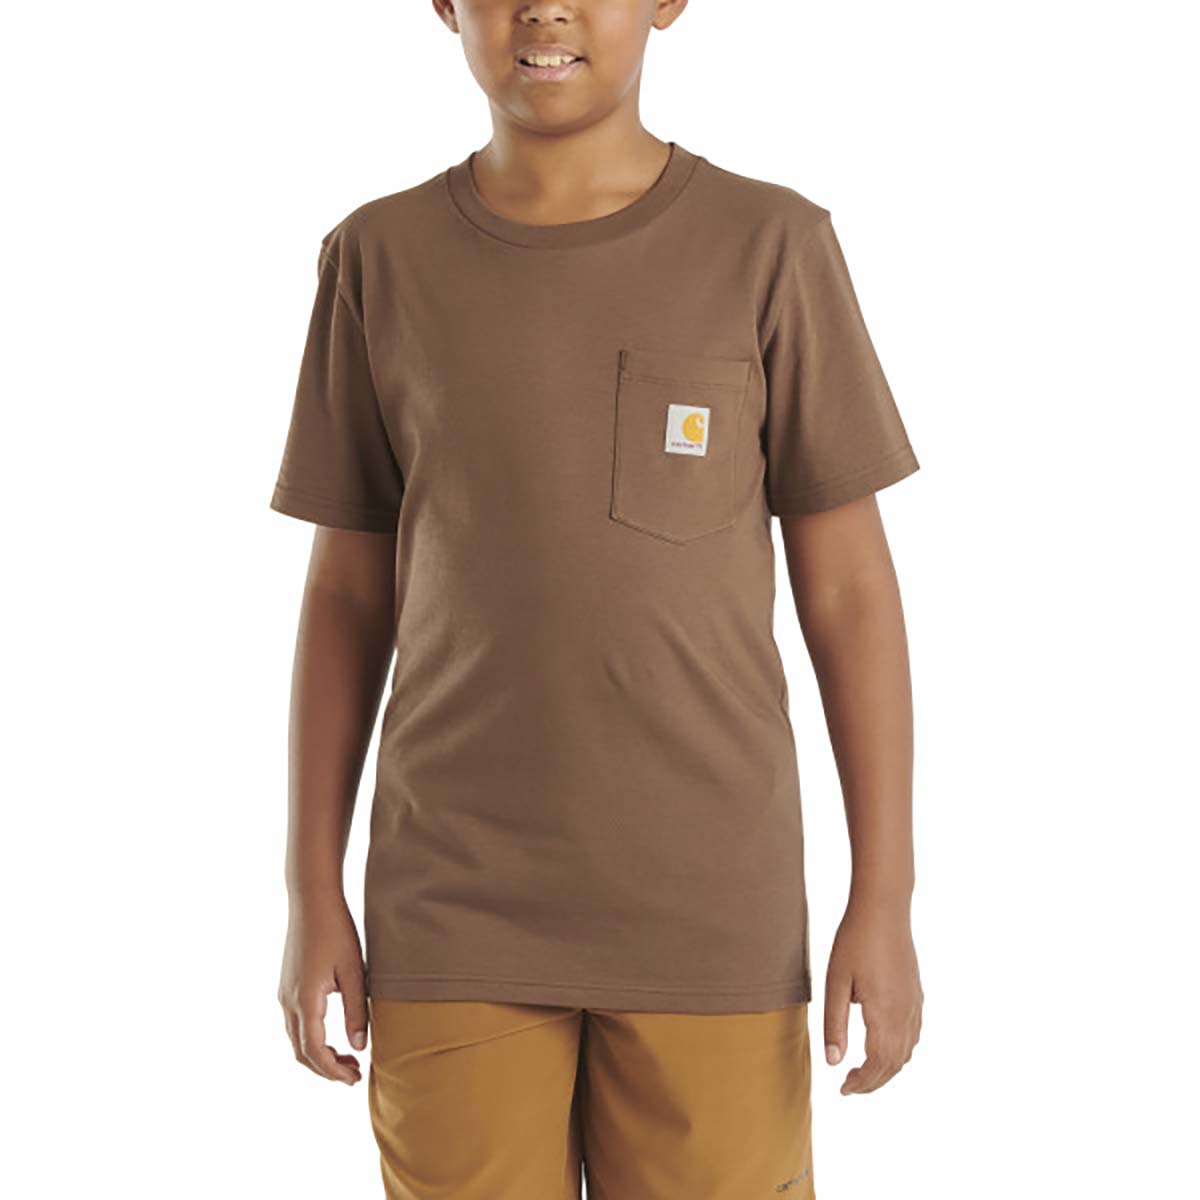 Carhartt Boys' Short Sleeve Deer "C" T- Shirt